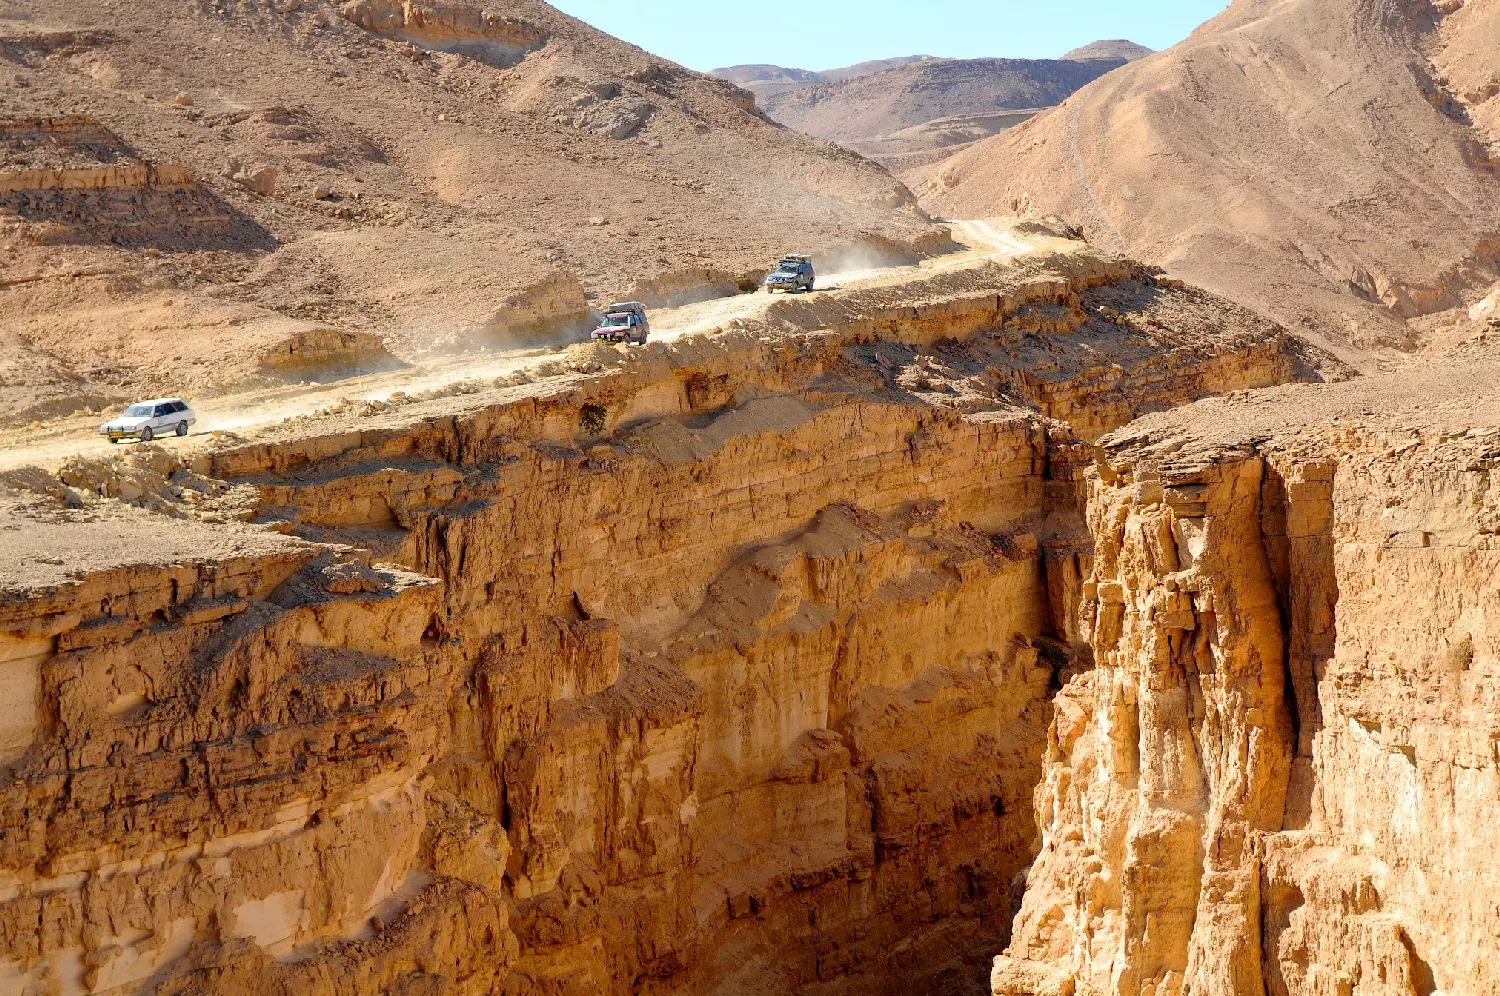 : 'אצבע אלוהים' שבנחל עתק, היא אחד המקומות המרהיבים ביותר בישראל. עקב ריחוקו של הנחל, לא רבים מגיעים לכאן